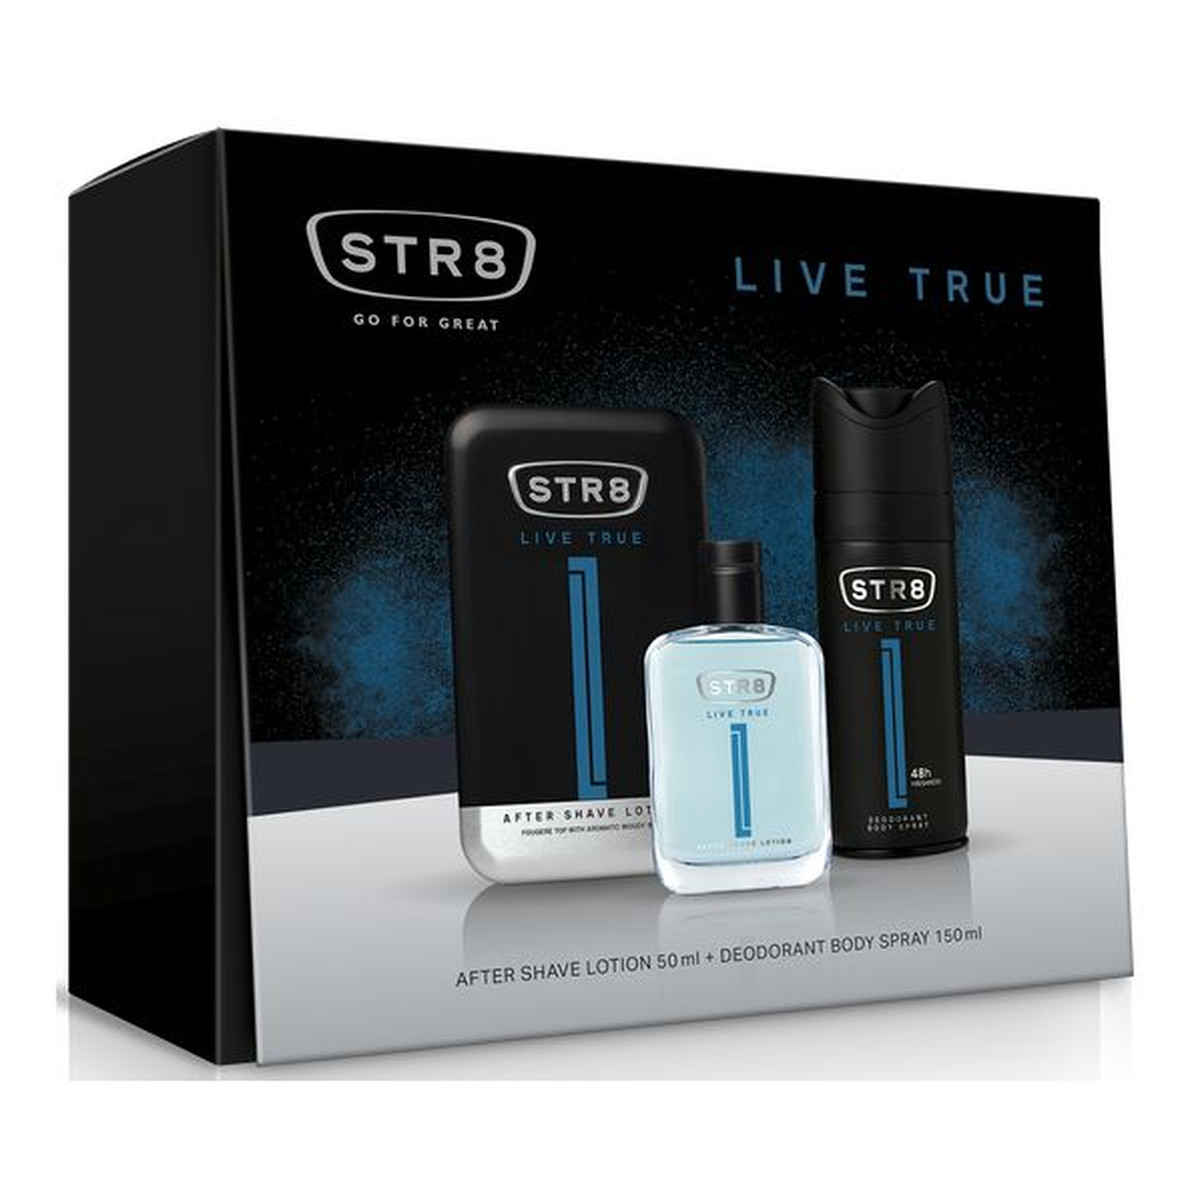 STR8 Live True zestaw prezentowy (woda po goleniu 50ml + dezodorant spray 150ml)